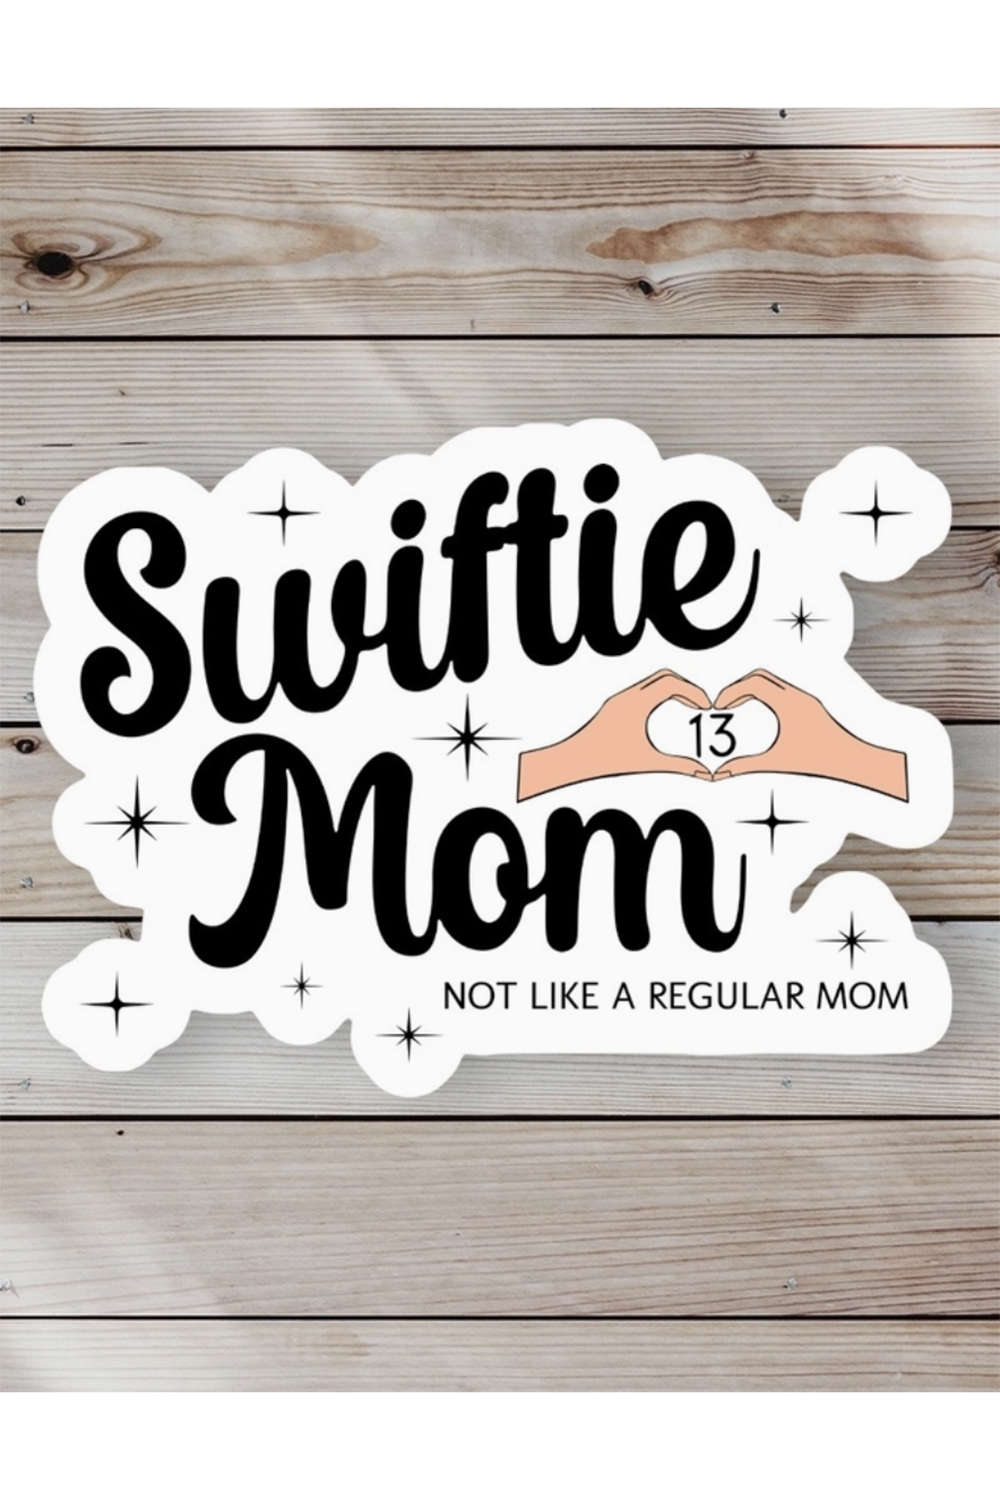 Trendy Sticker - Swiftie Mom